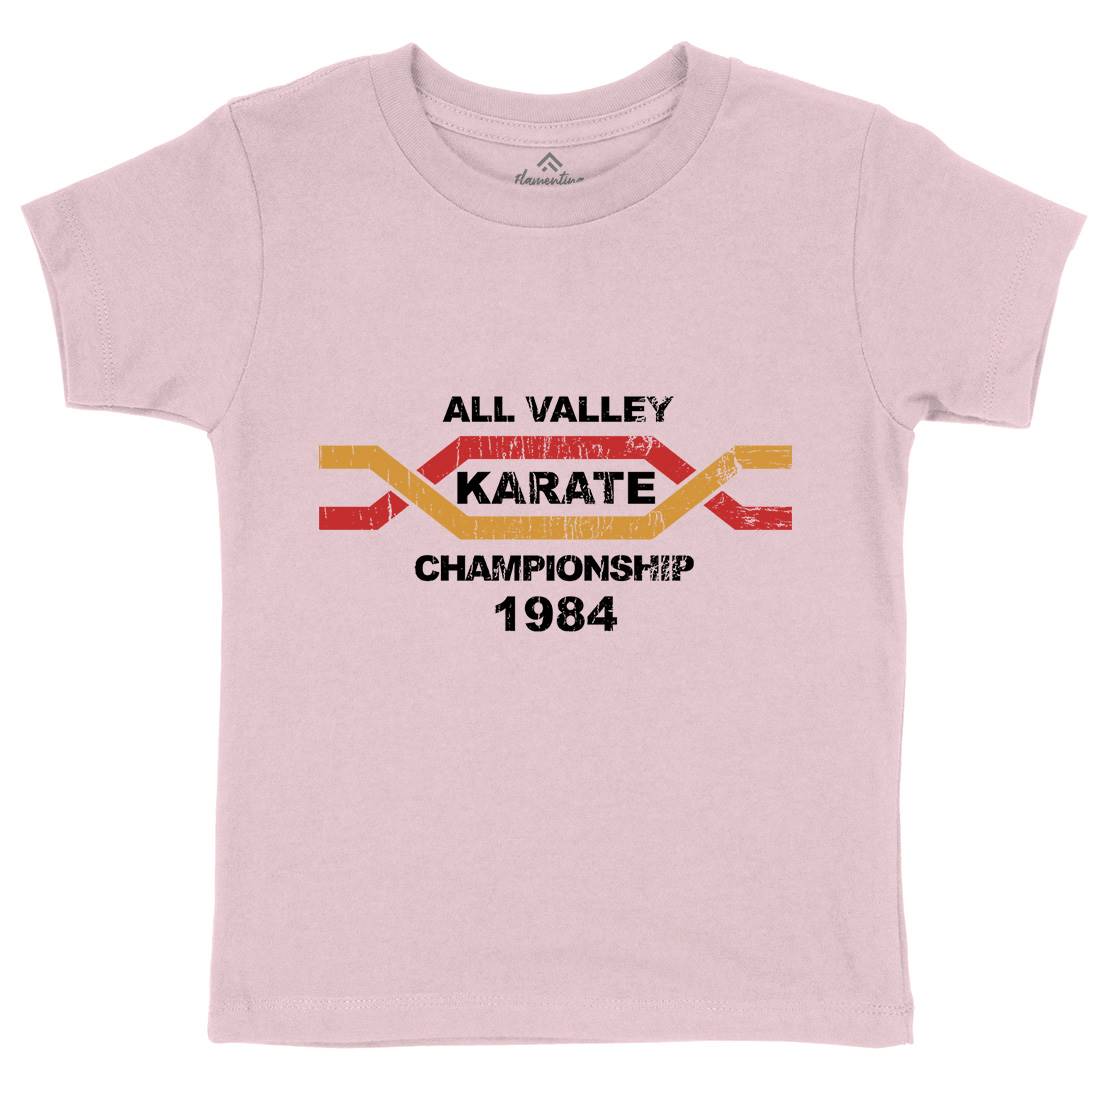 All Valley Kids Organic Crew Neck T-Shirt Sport D251